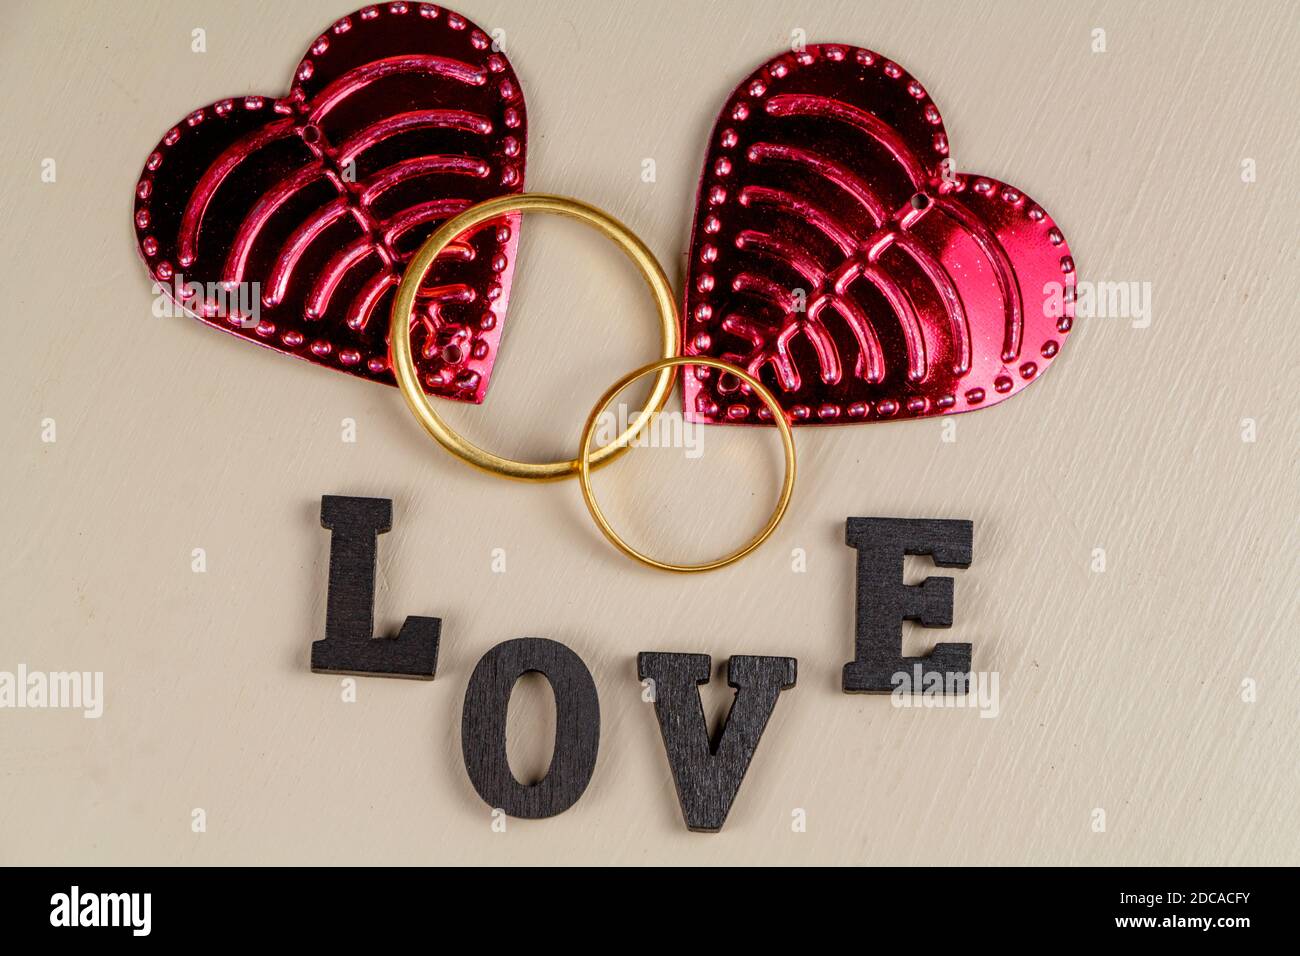 Dos anillos de boda en oro, dos corazones rosados y la palabra amor escrito en letra negra Foto de stock